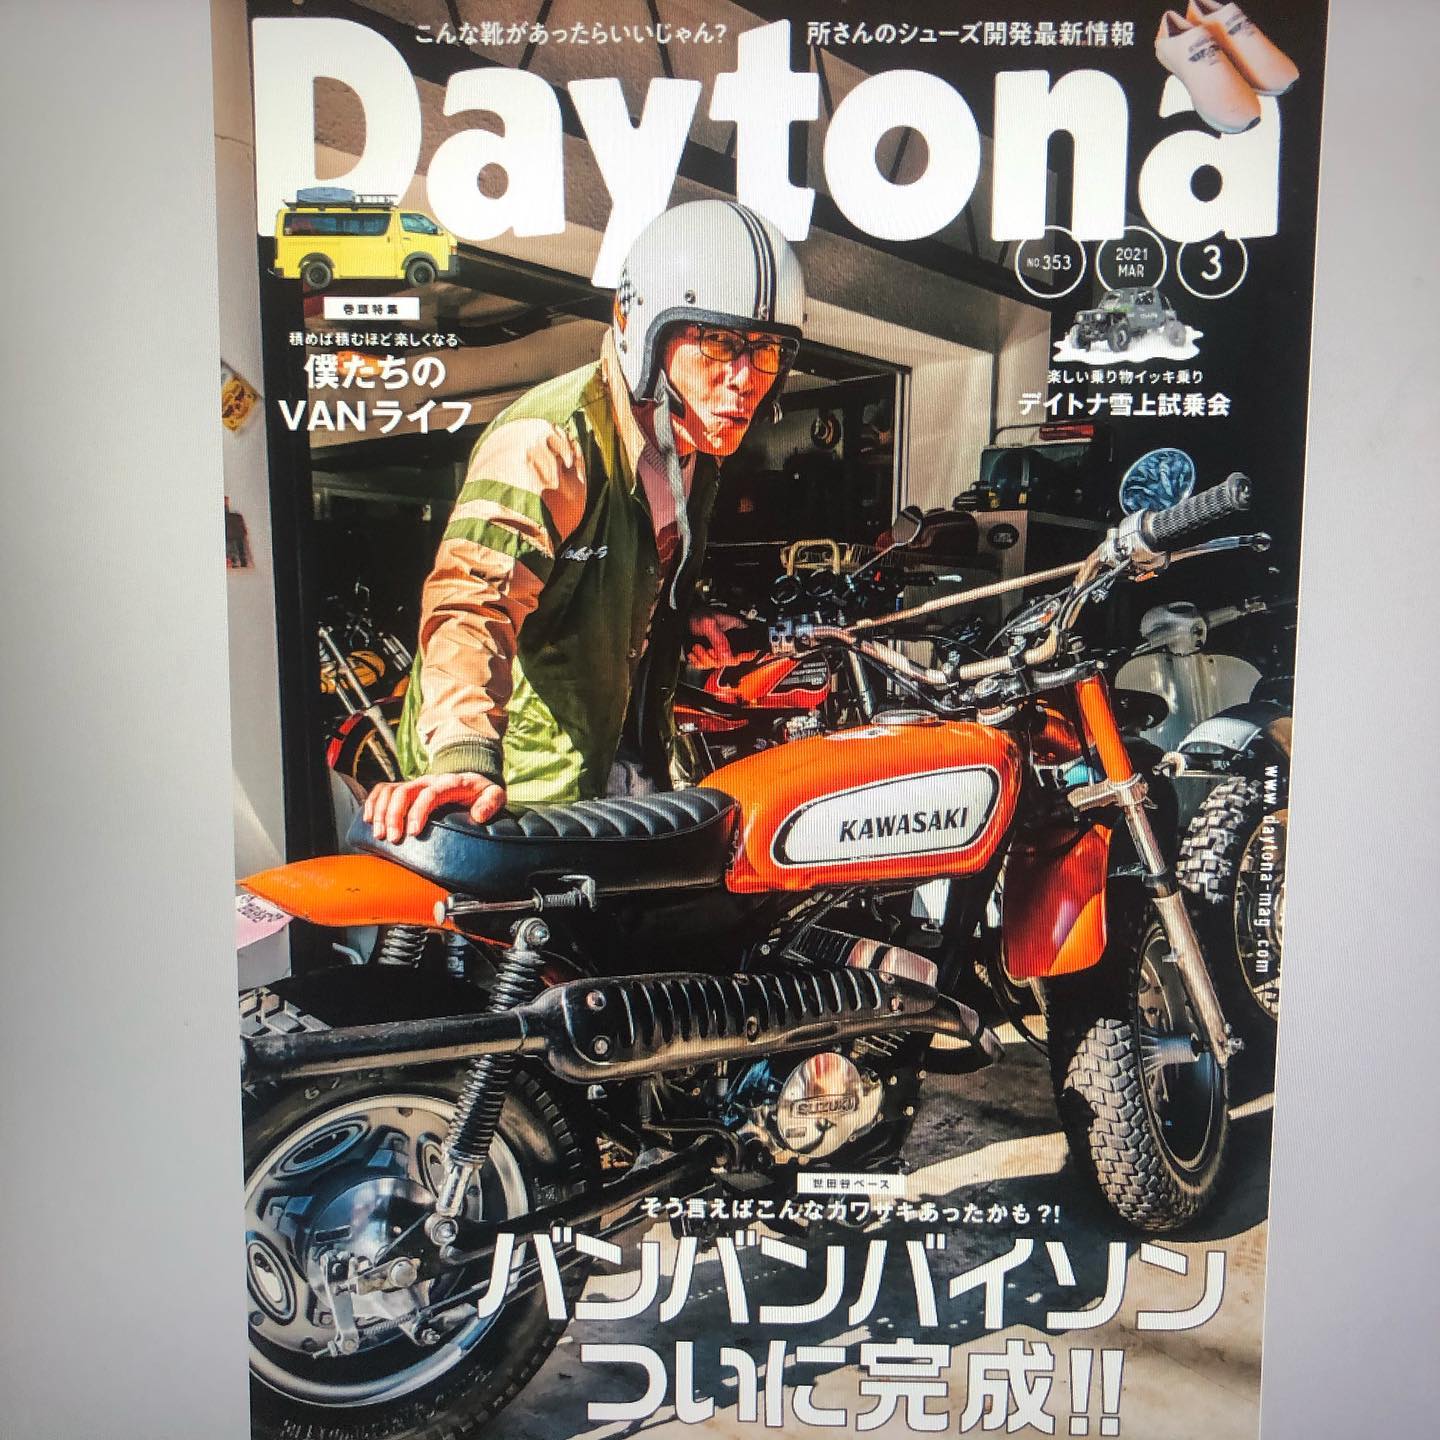 Daytona 3月号　発売でございます️いよいよです️詳しくは誌面にて️#daytona #daytonamagazine #dcc #鈑金塗装 #レストア #mazda #ポーターバン #千葉 #千葉北 #dmc